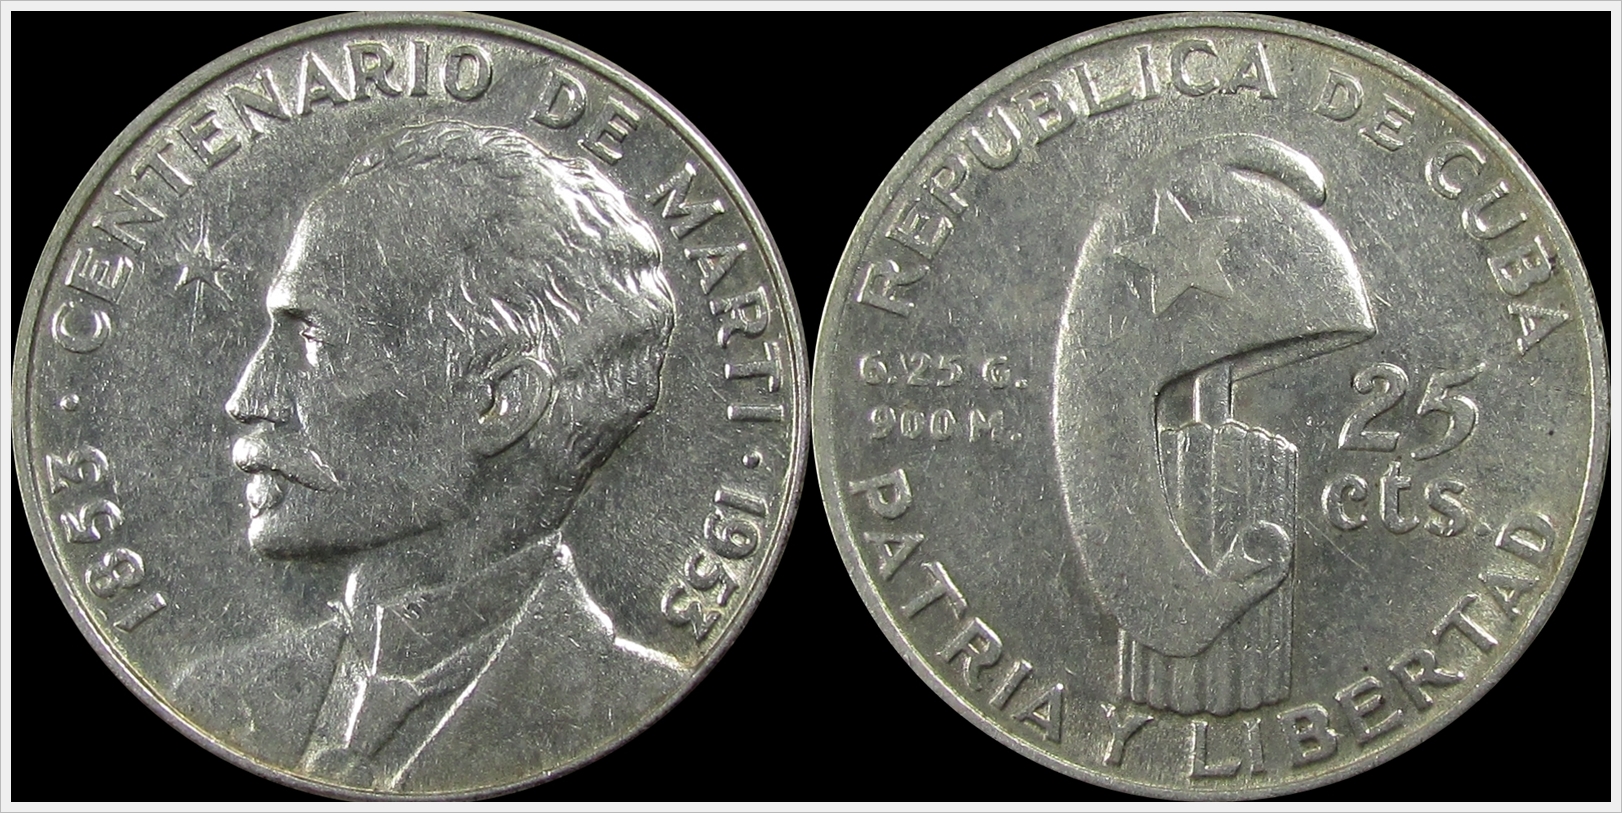 Cuba 1953 25 Centavos.jpg